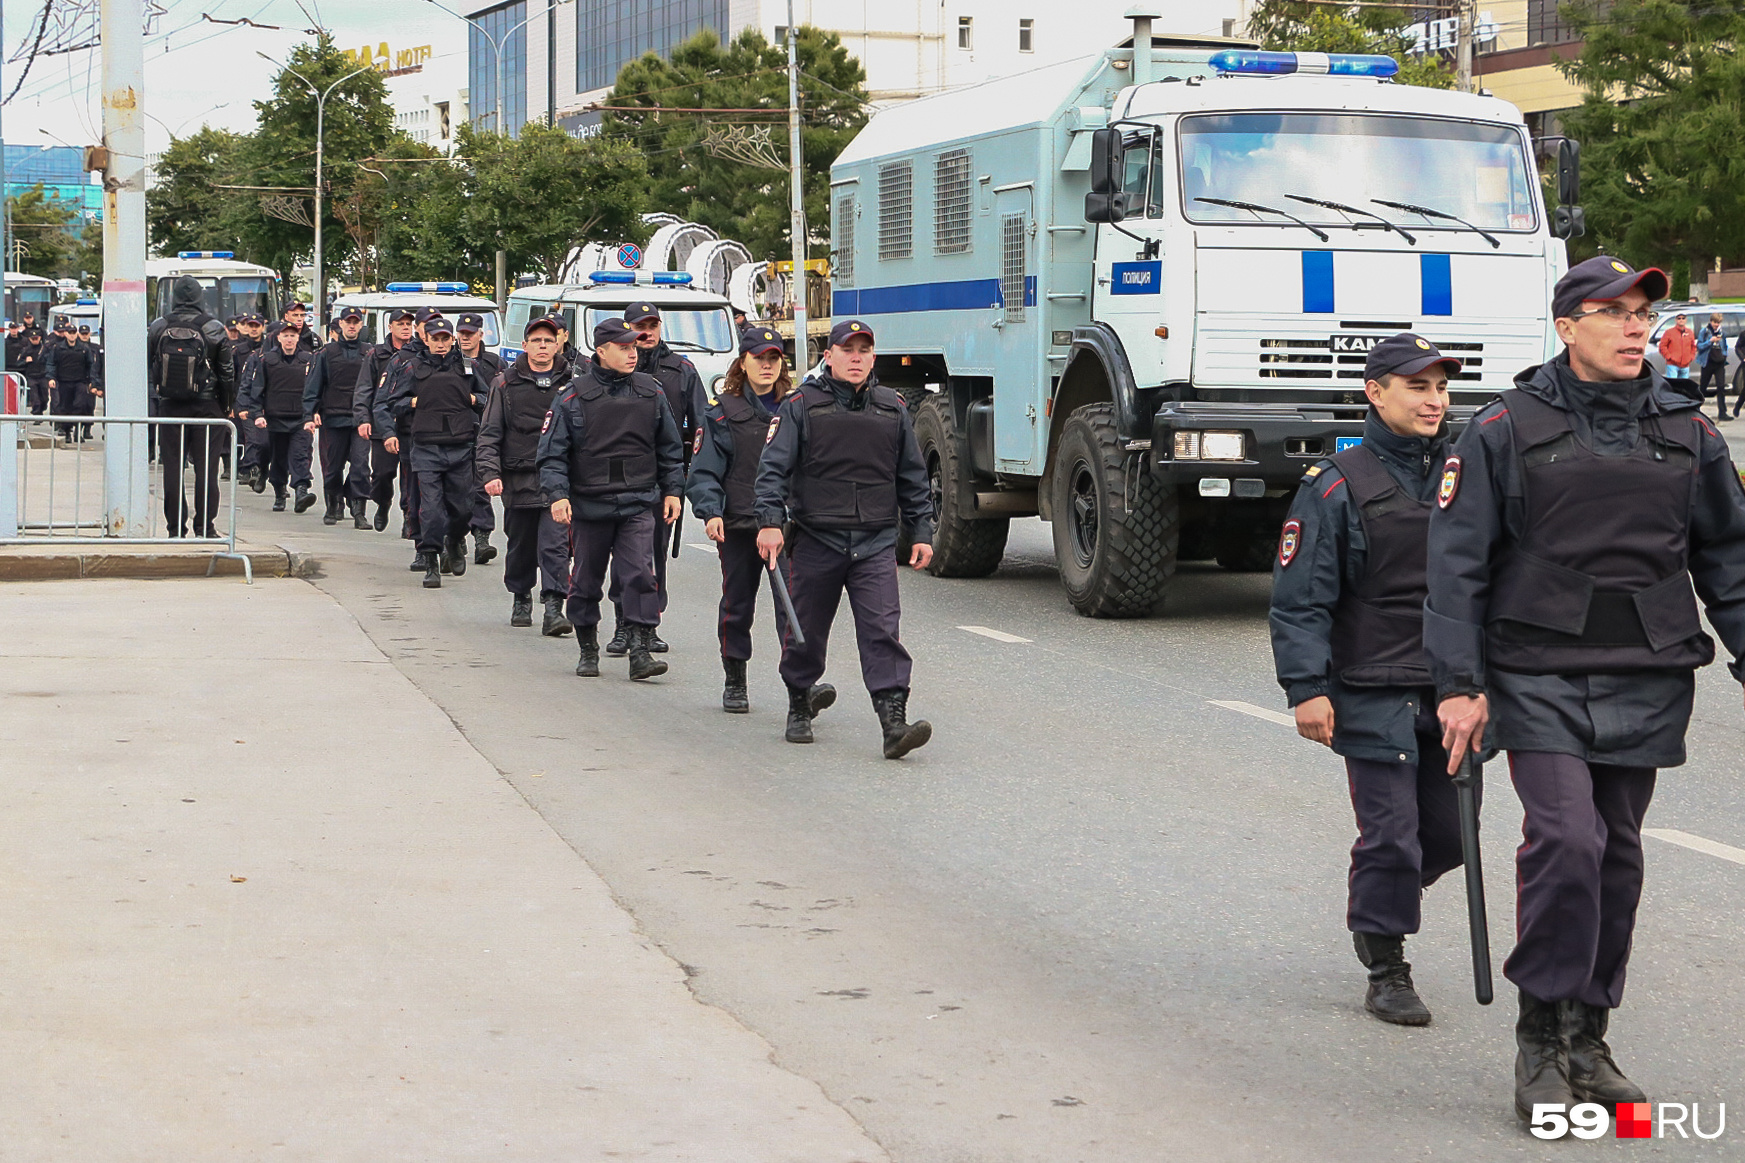 Такого количества полицейских и ОМОНа в Перми, наверняка, не видели никогда